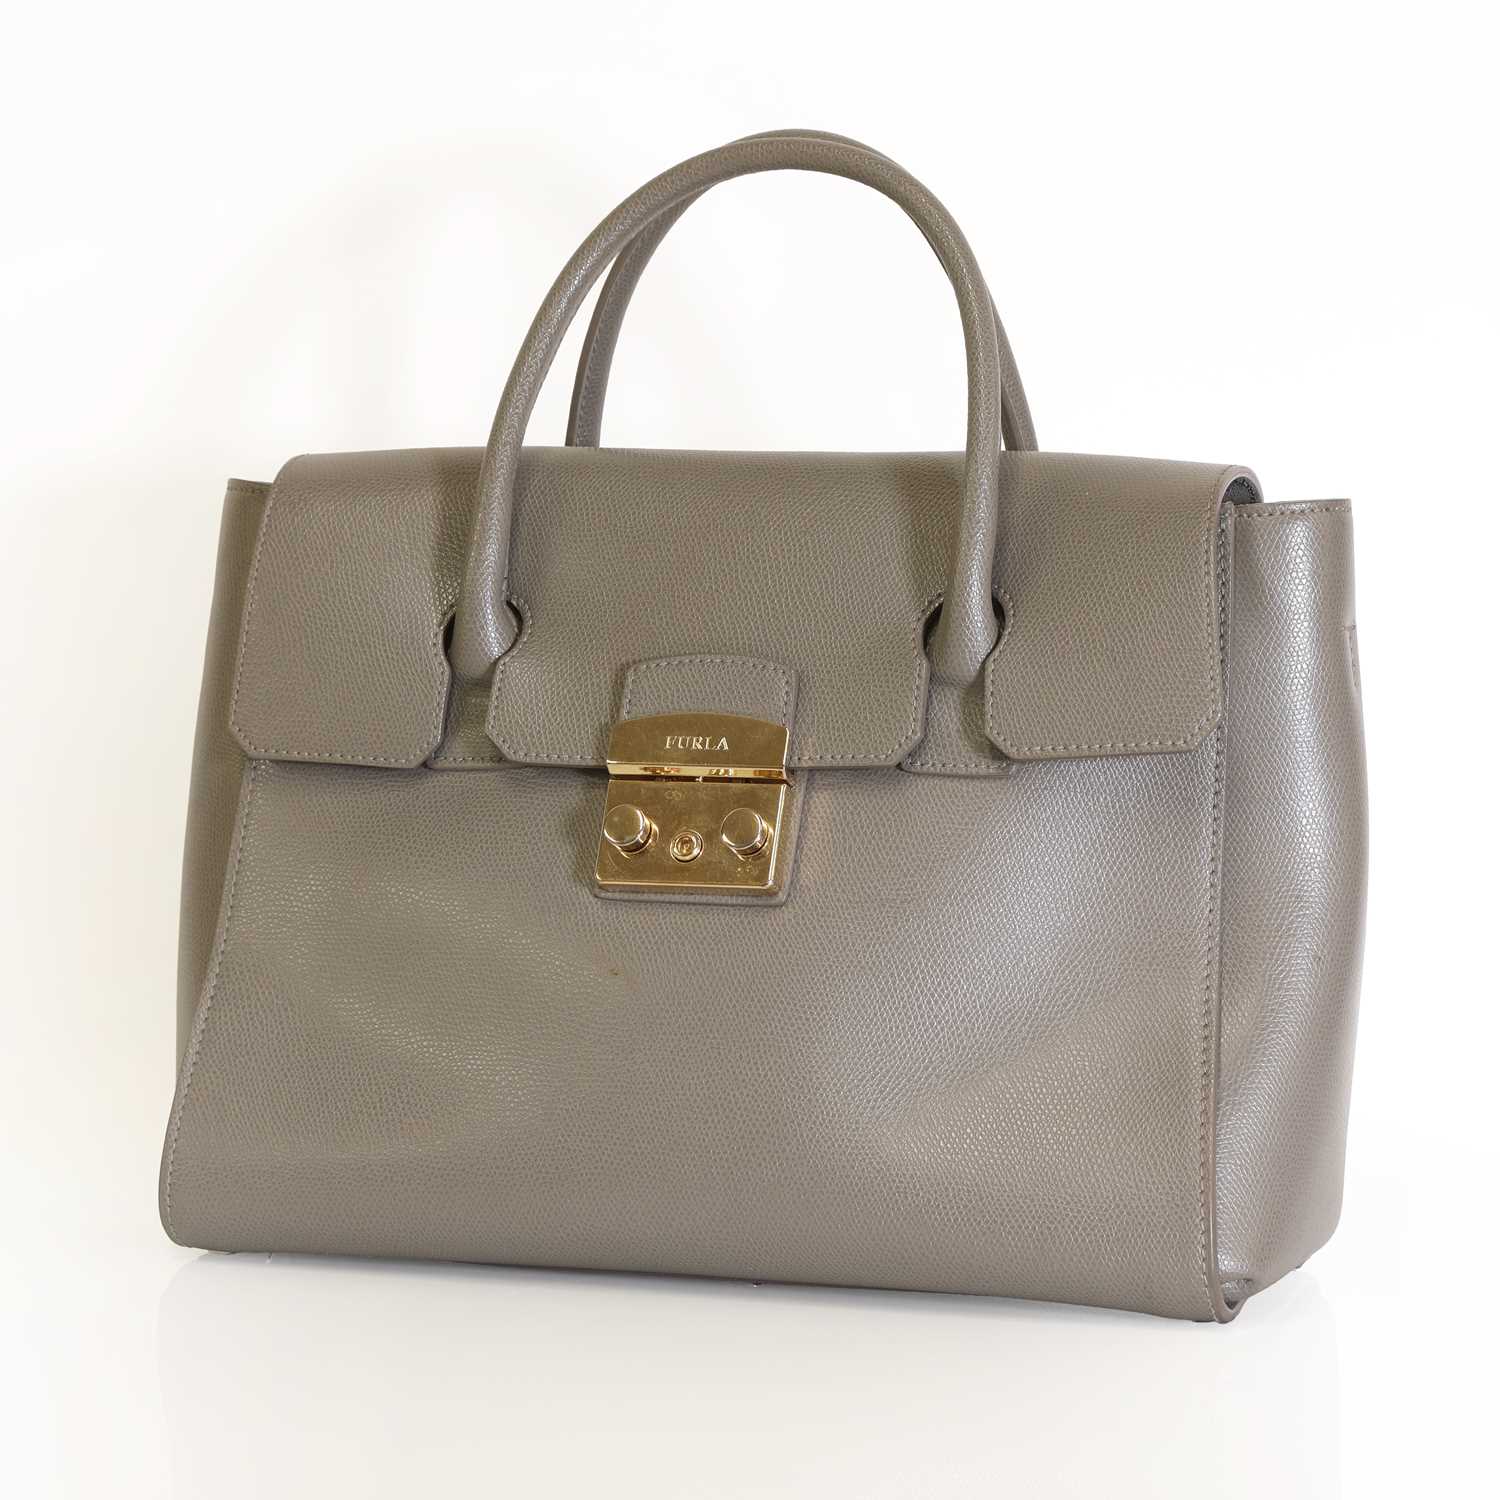 Lot 326 - A grey Furla handbag,